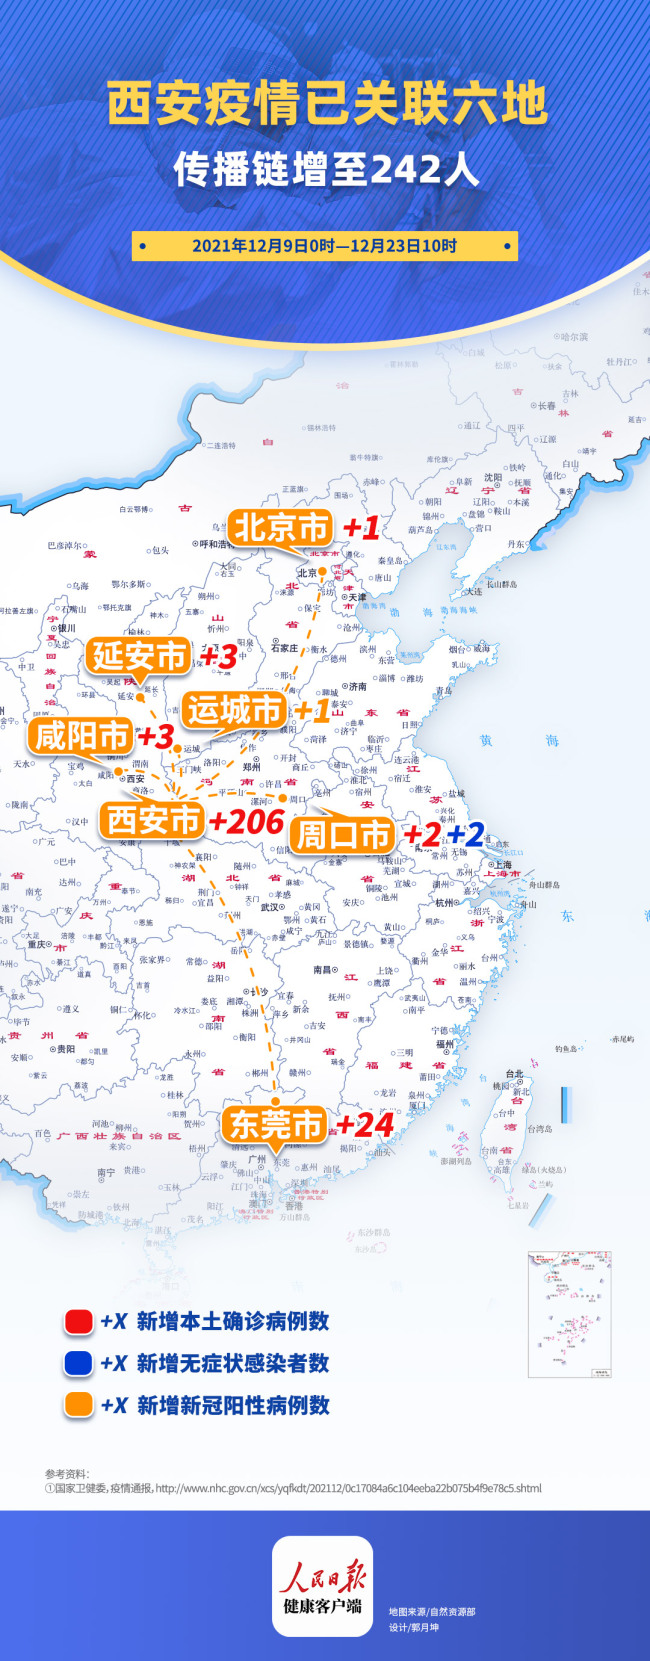 北京朝阳新增封控区和管控区 - Bet365 - 博牛门户 百度热点快讯